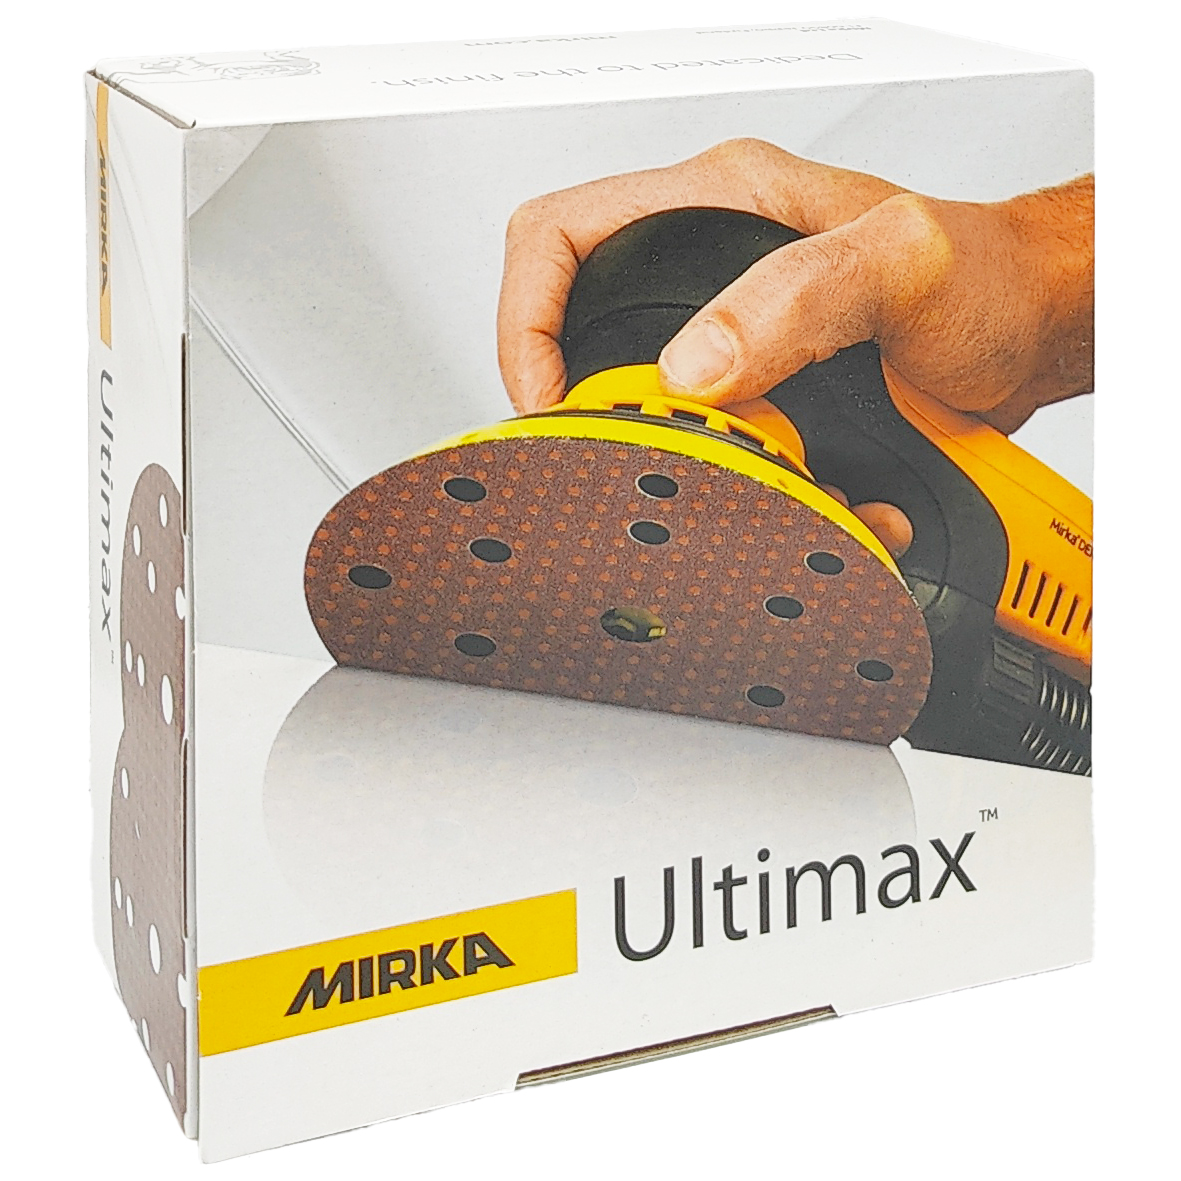 Abbildung Mirka Ultimax 150mm 15L Verpackung.